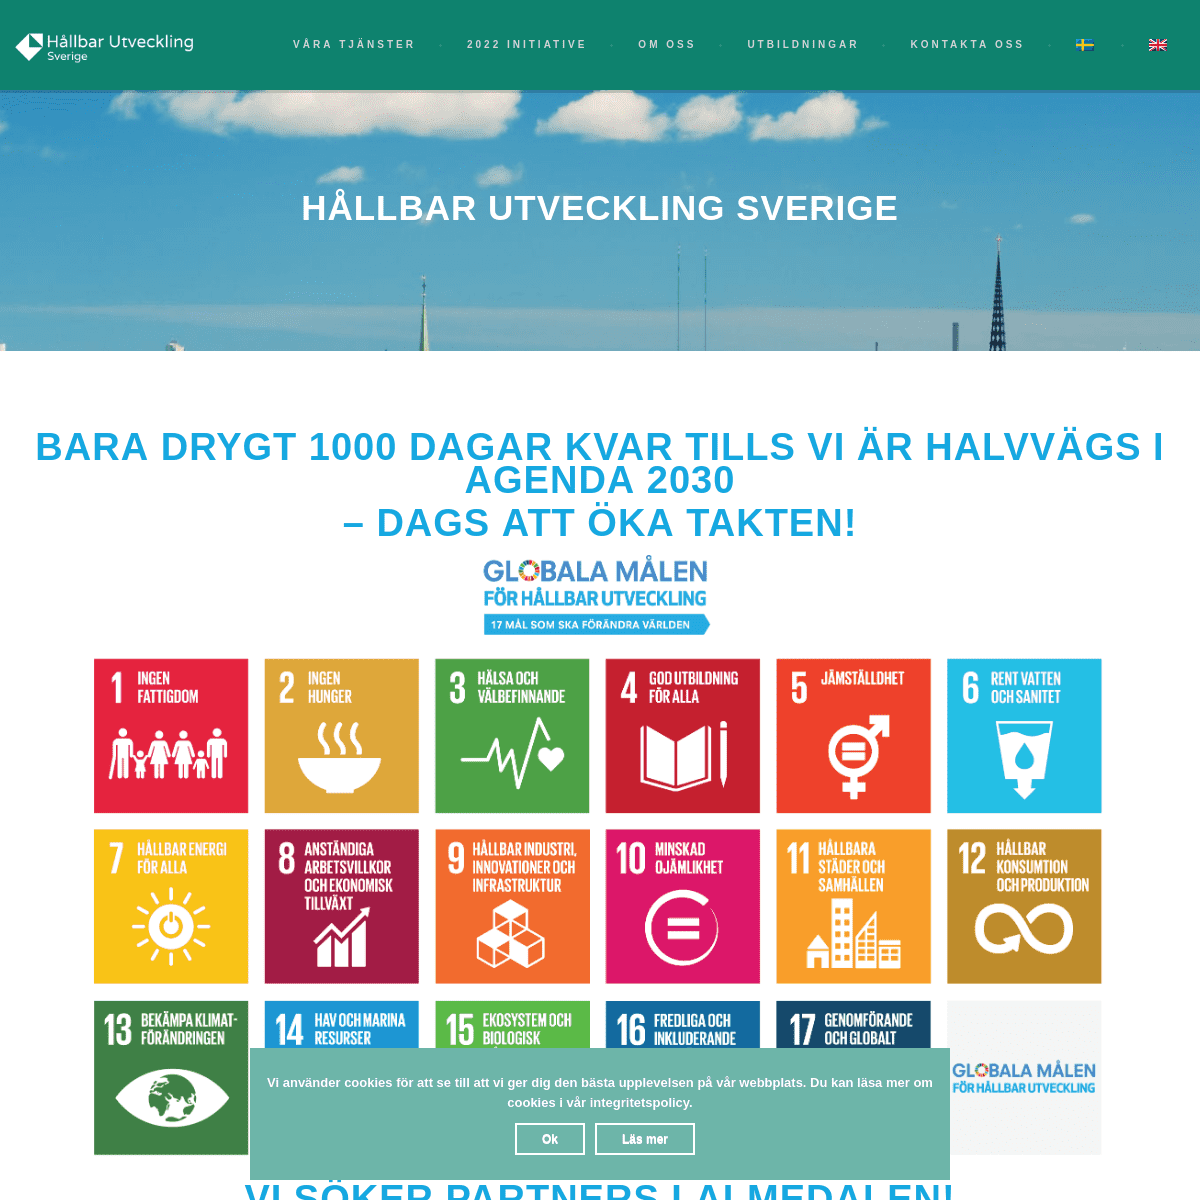 Vi gör hållbarhet enkelt - Hållbar Utveckling Sverige AB